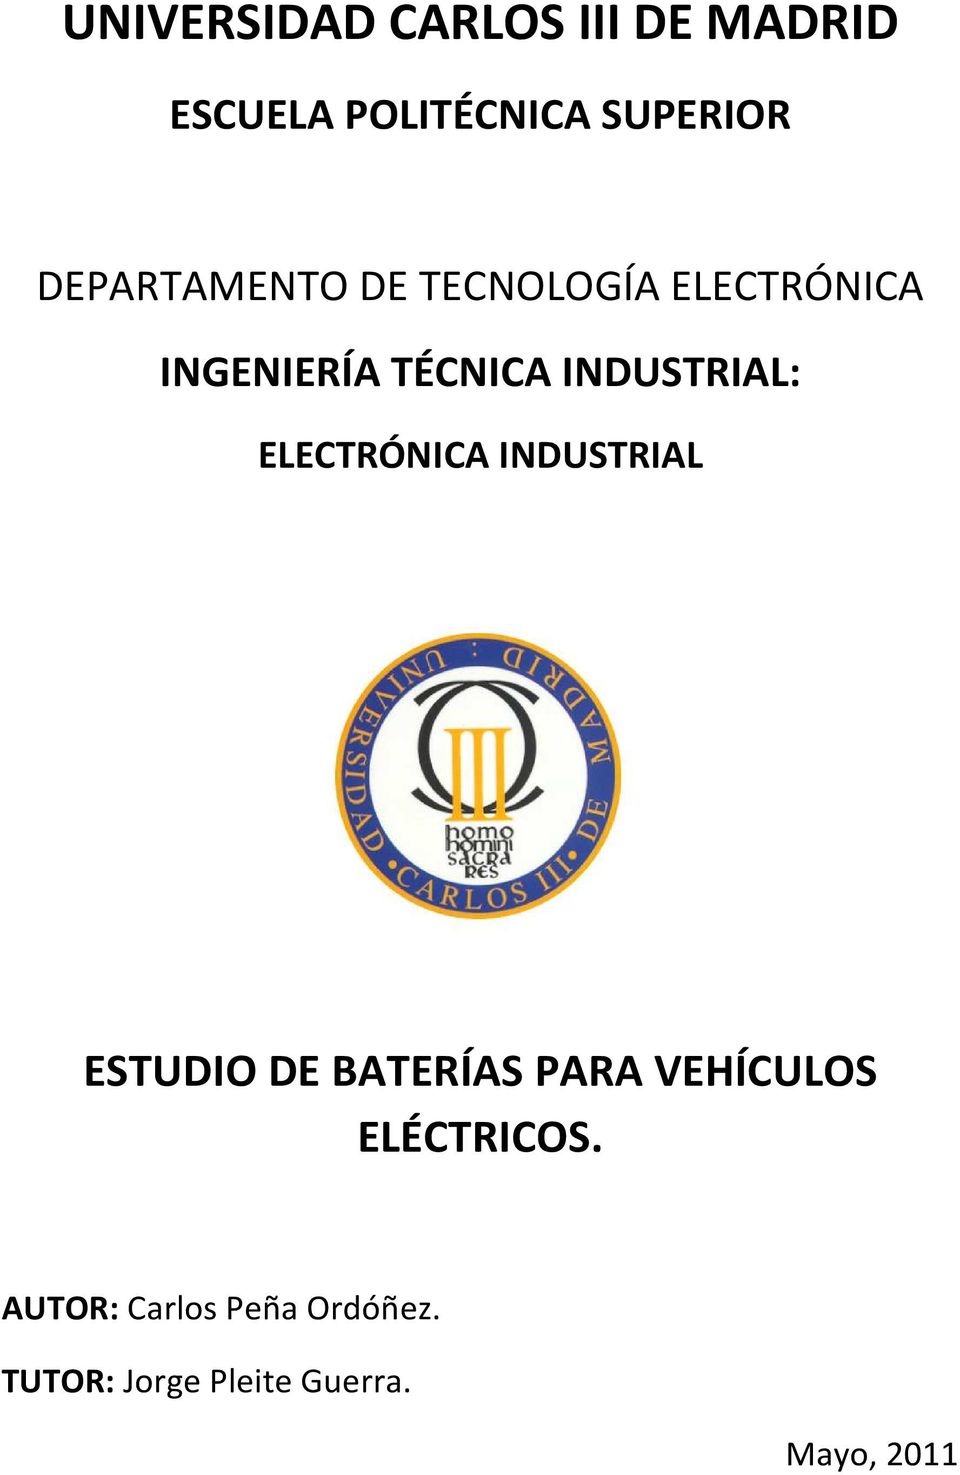 INDUSTRIAL ESTUDIO DE BATERÍAS PARA VEHÍCULOS ELÉCTRICOS.